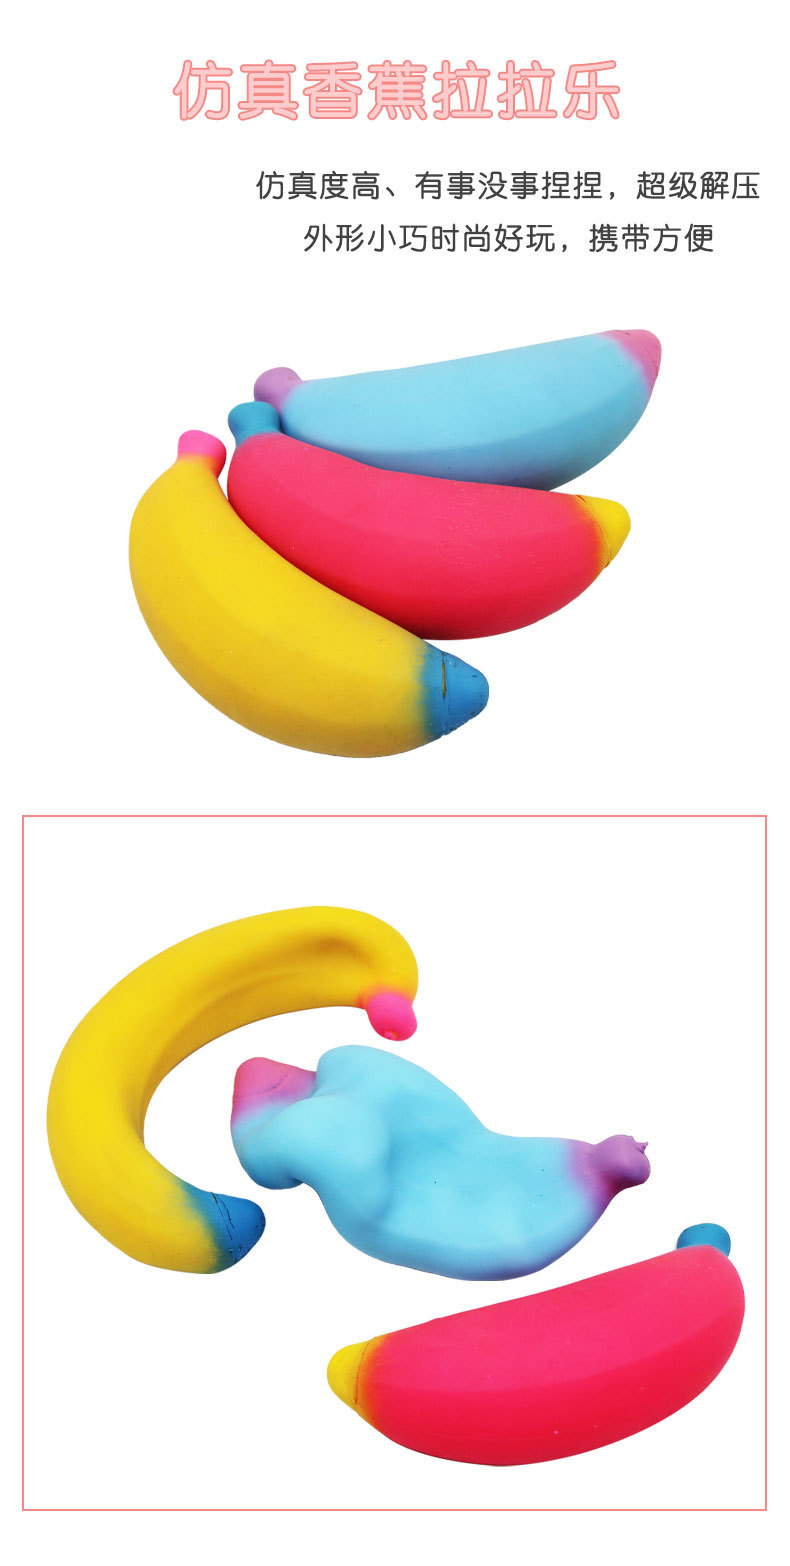 新款创意香蕉捏捏乐可爱搞笑减压拉拉乐玩具发泄解压整蛊拉伸香蕉详情1